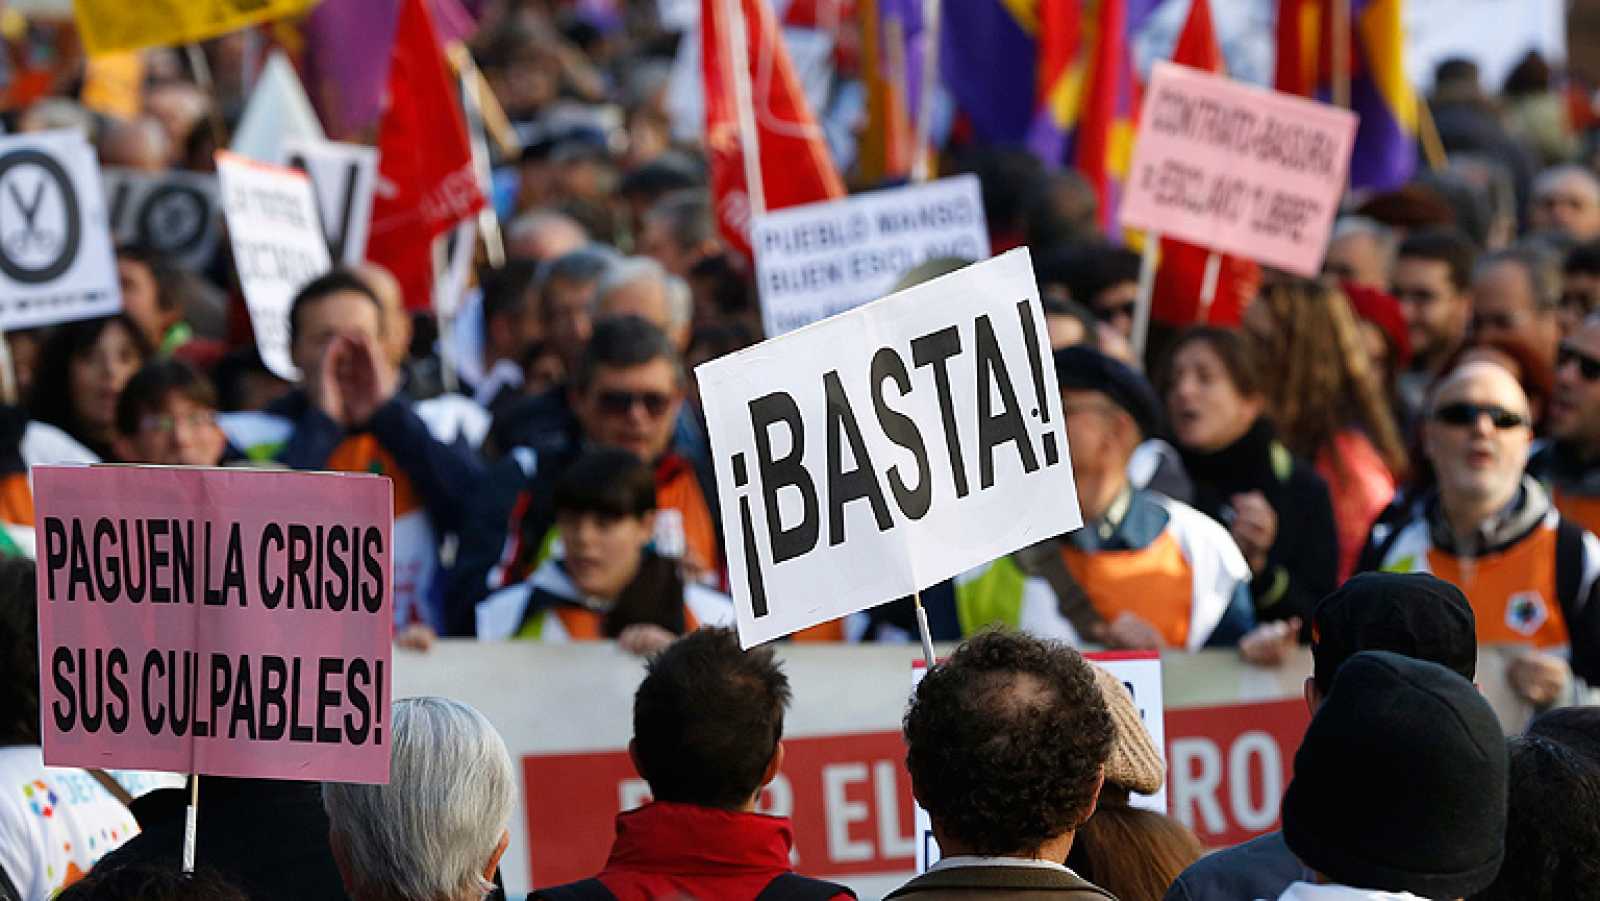 Qué medidas está tomando el gobierno español para combatir la crisis